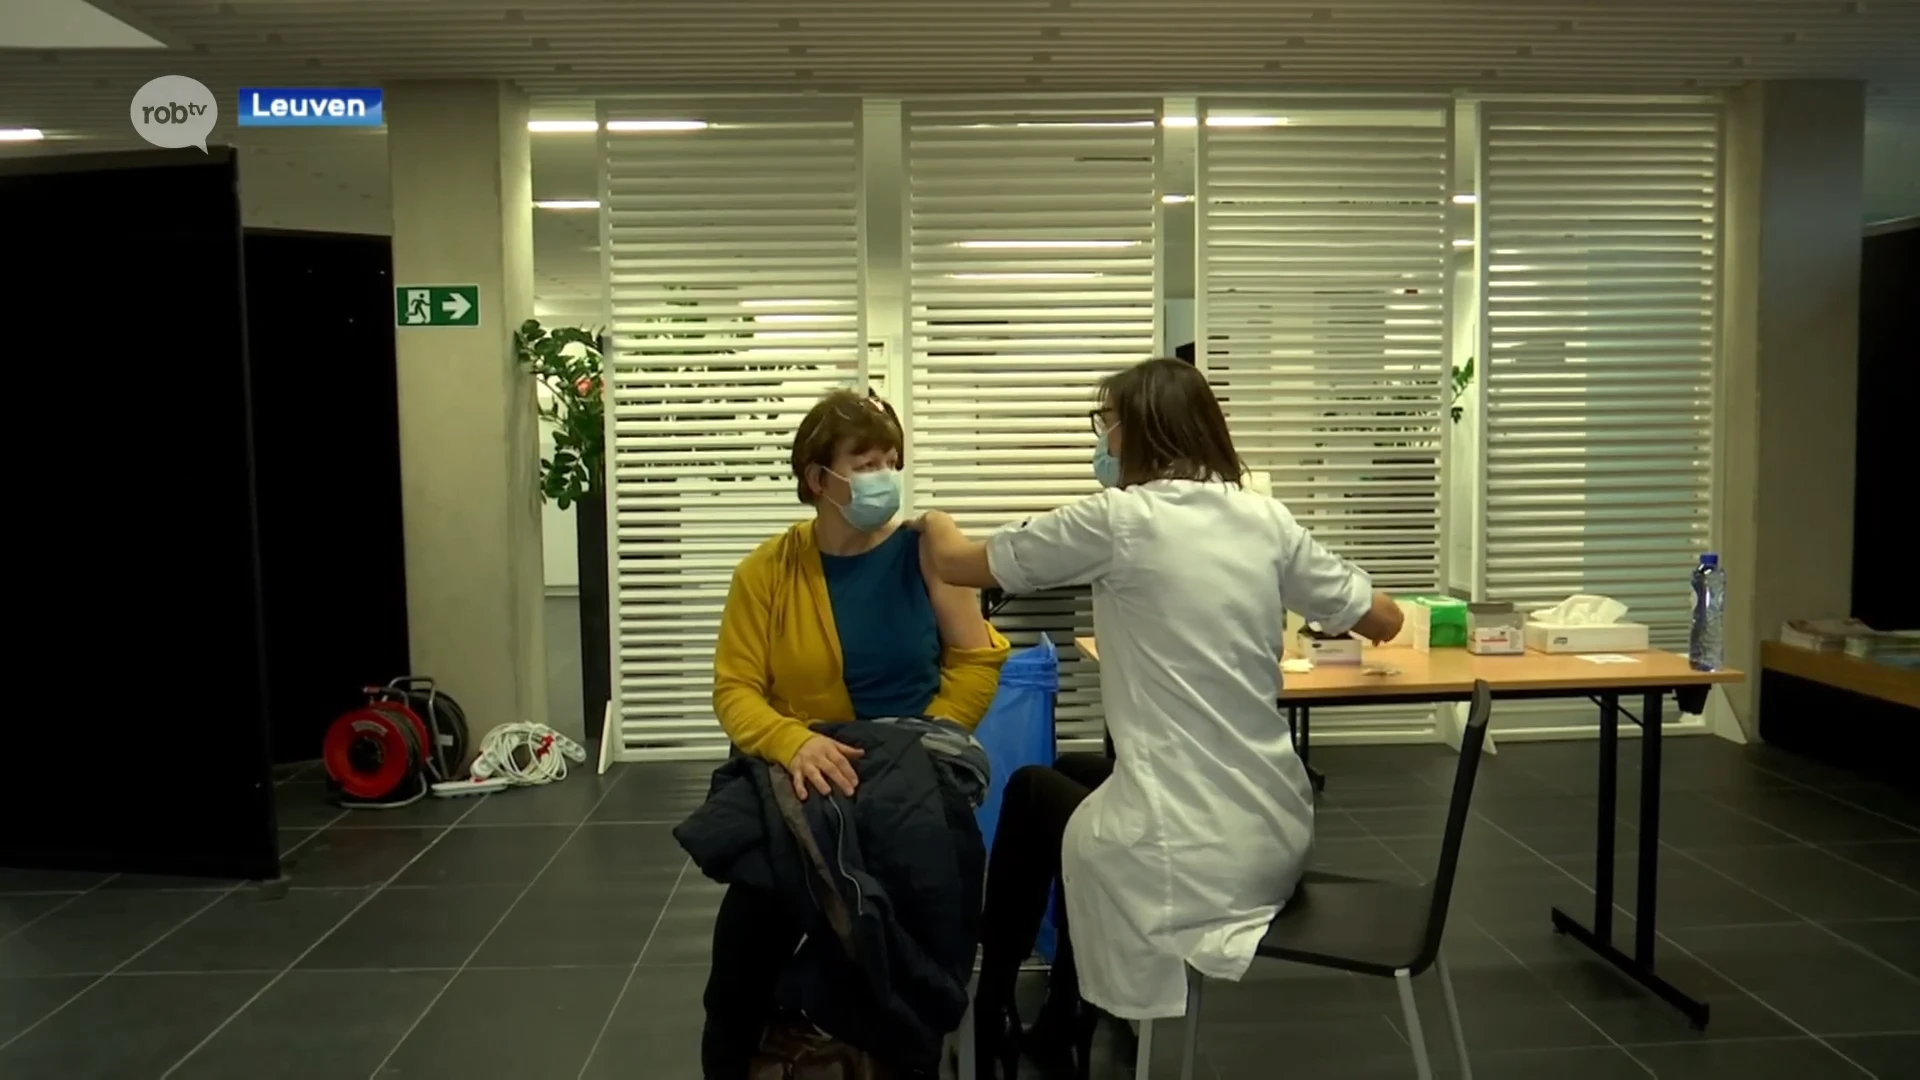 Eerste helden van de zorg krijgen coronavaccin in UZ Leuven: “Het is maar een klein prikje en doet geen pijn"